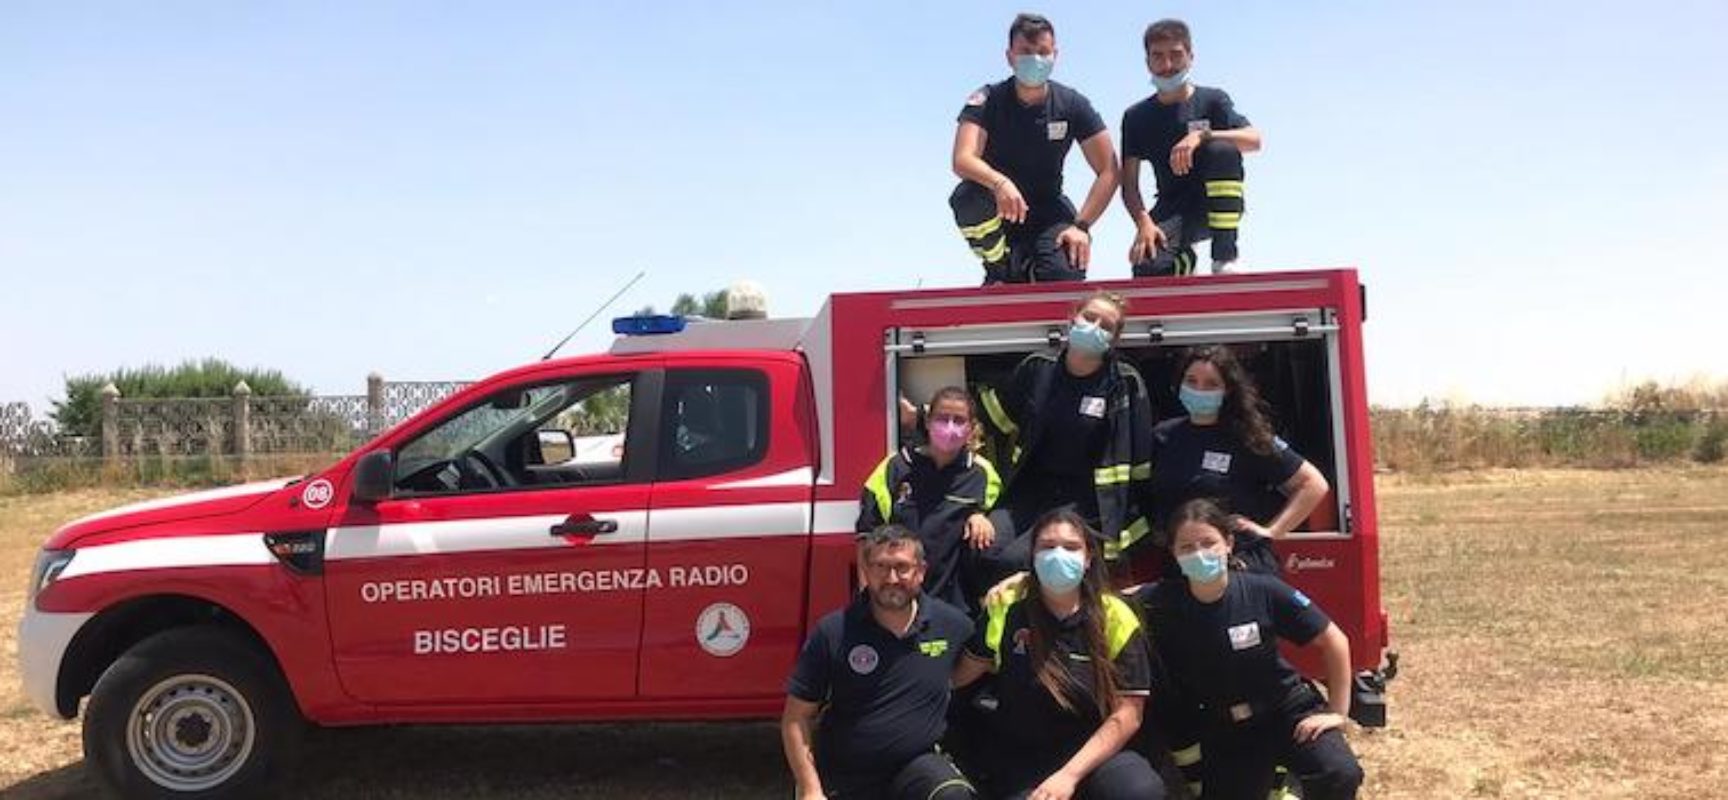 Operatori emergenza radio Bisceglie abilitati al corso Anti Incendio Boschivo / FOTO